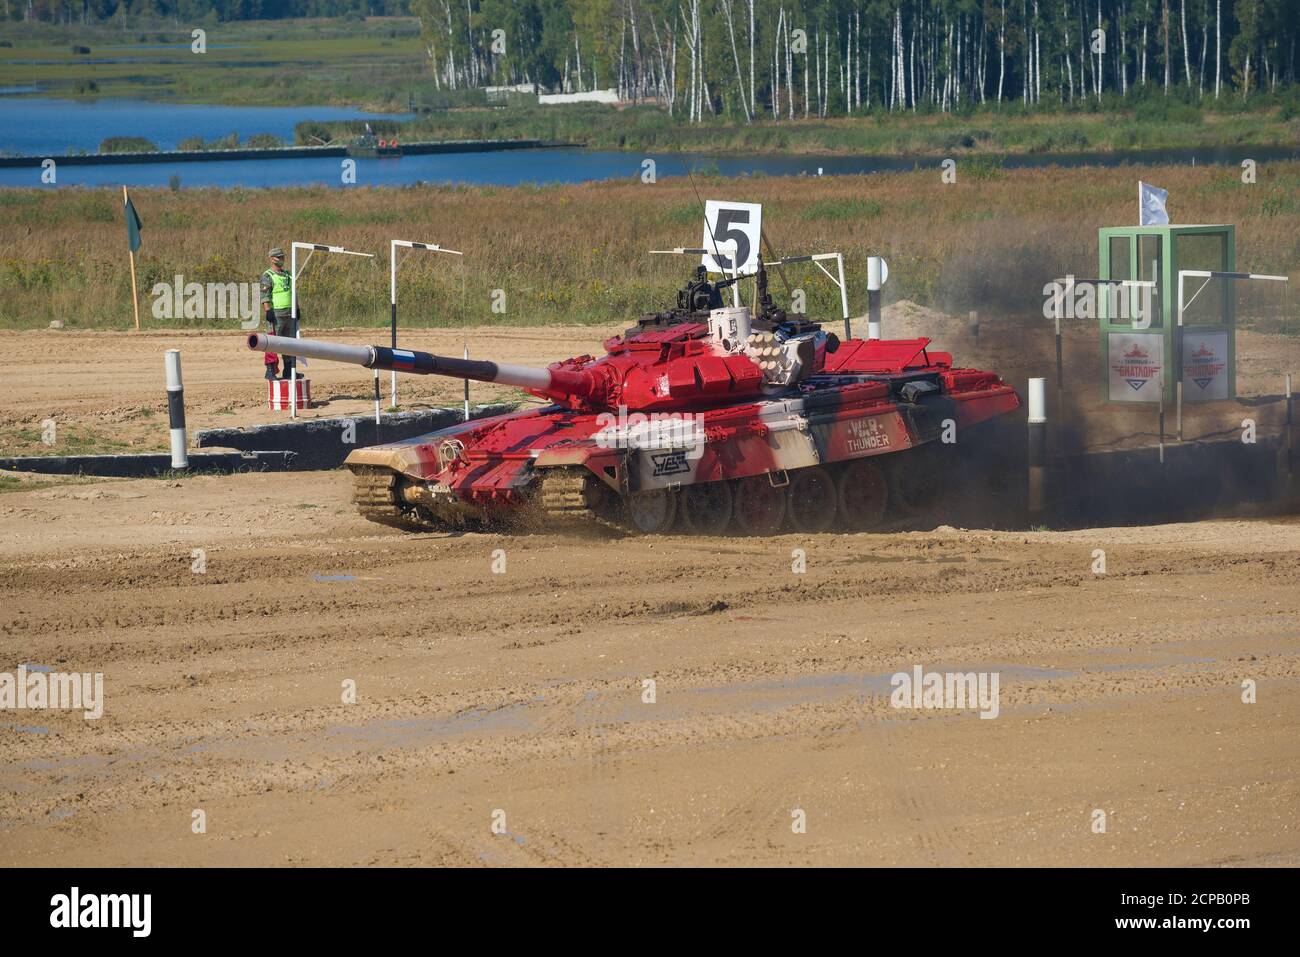 ALABINO, RUSSIE - 25 AOÛT 2020 : char de l'équipe russe sur la piste de biathlon. Jeux annuels internationaux de l'armée Banque D'Images